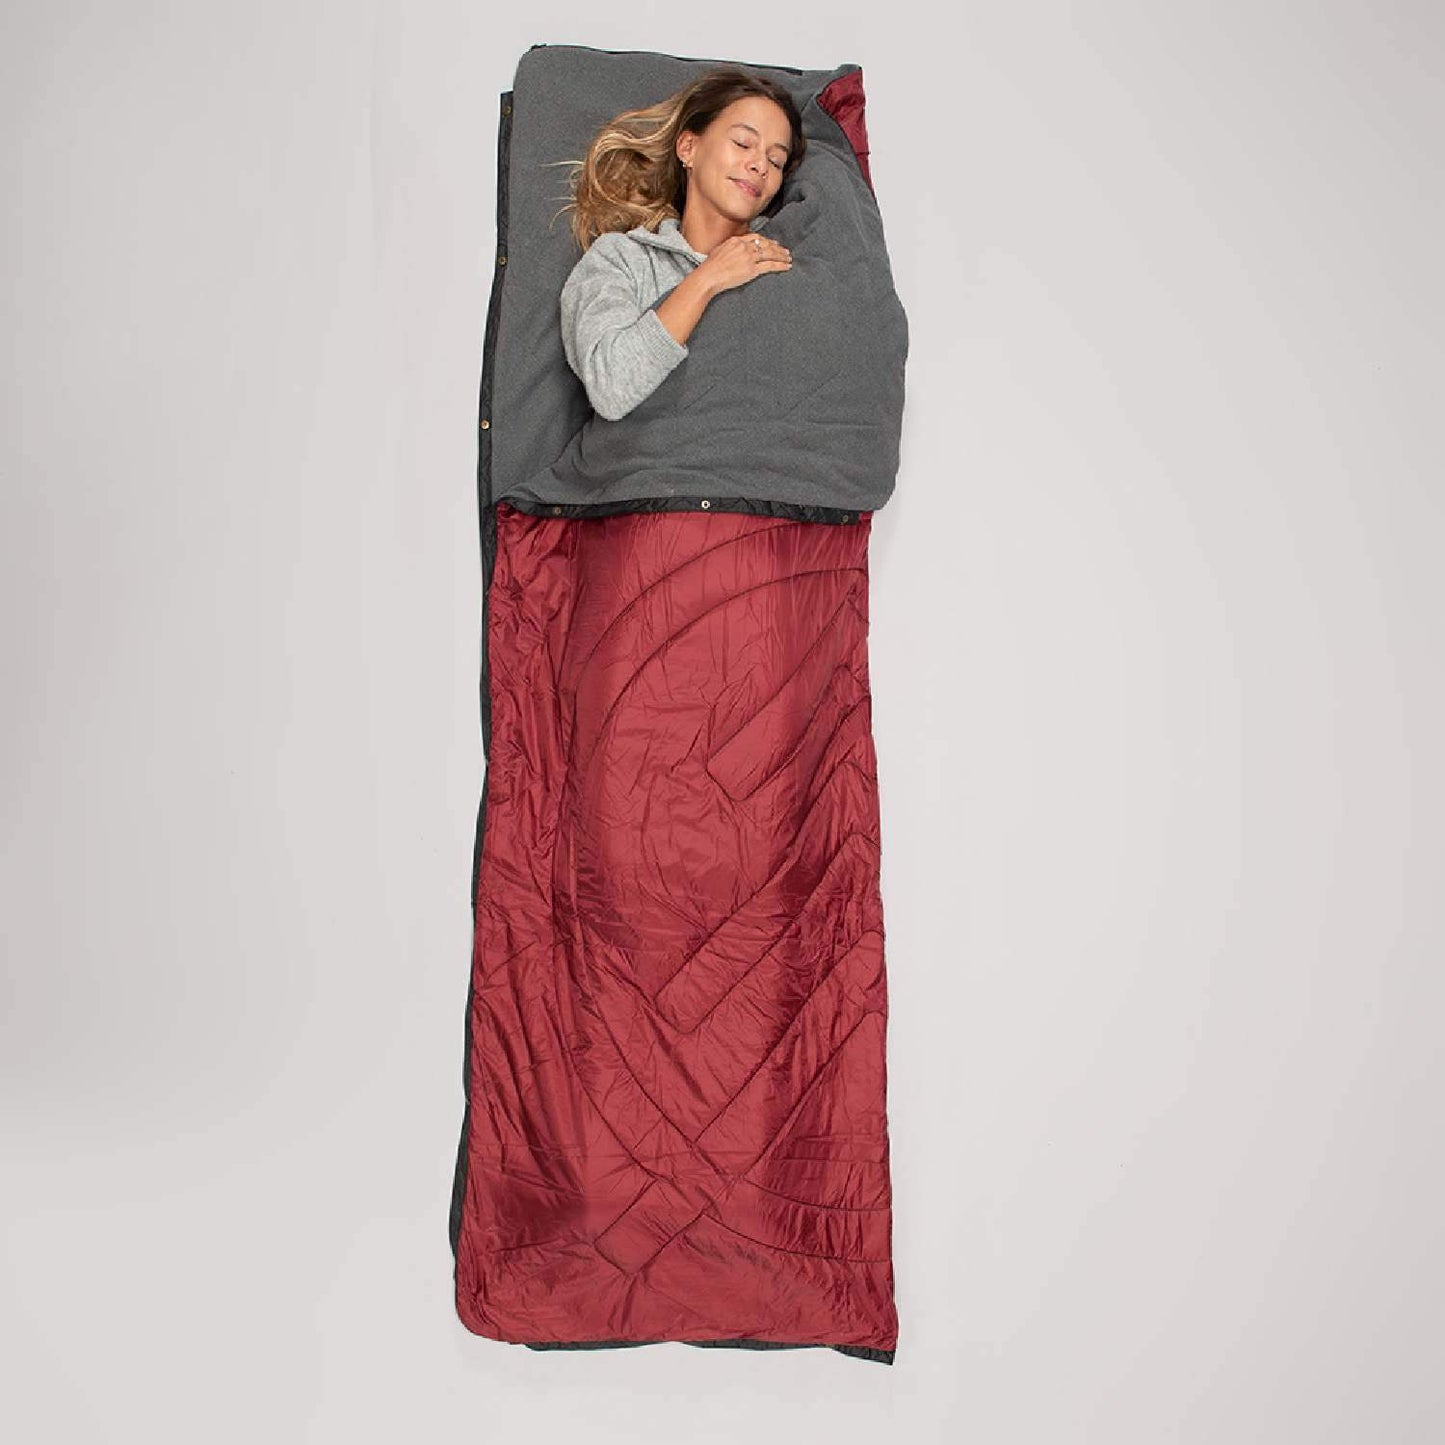 VOITED Fleece Outdoor Camping Blanket